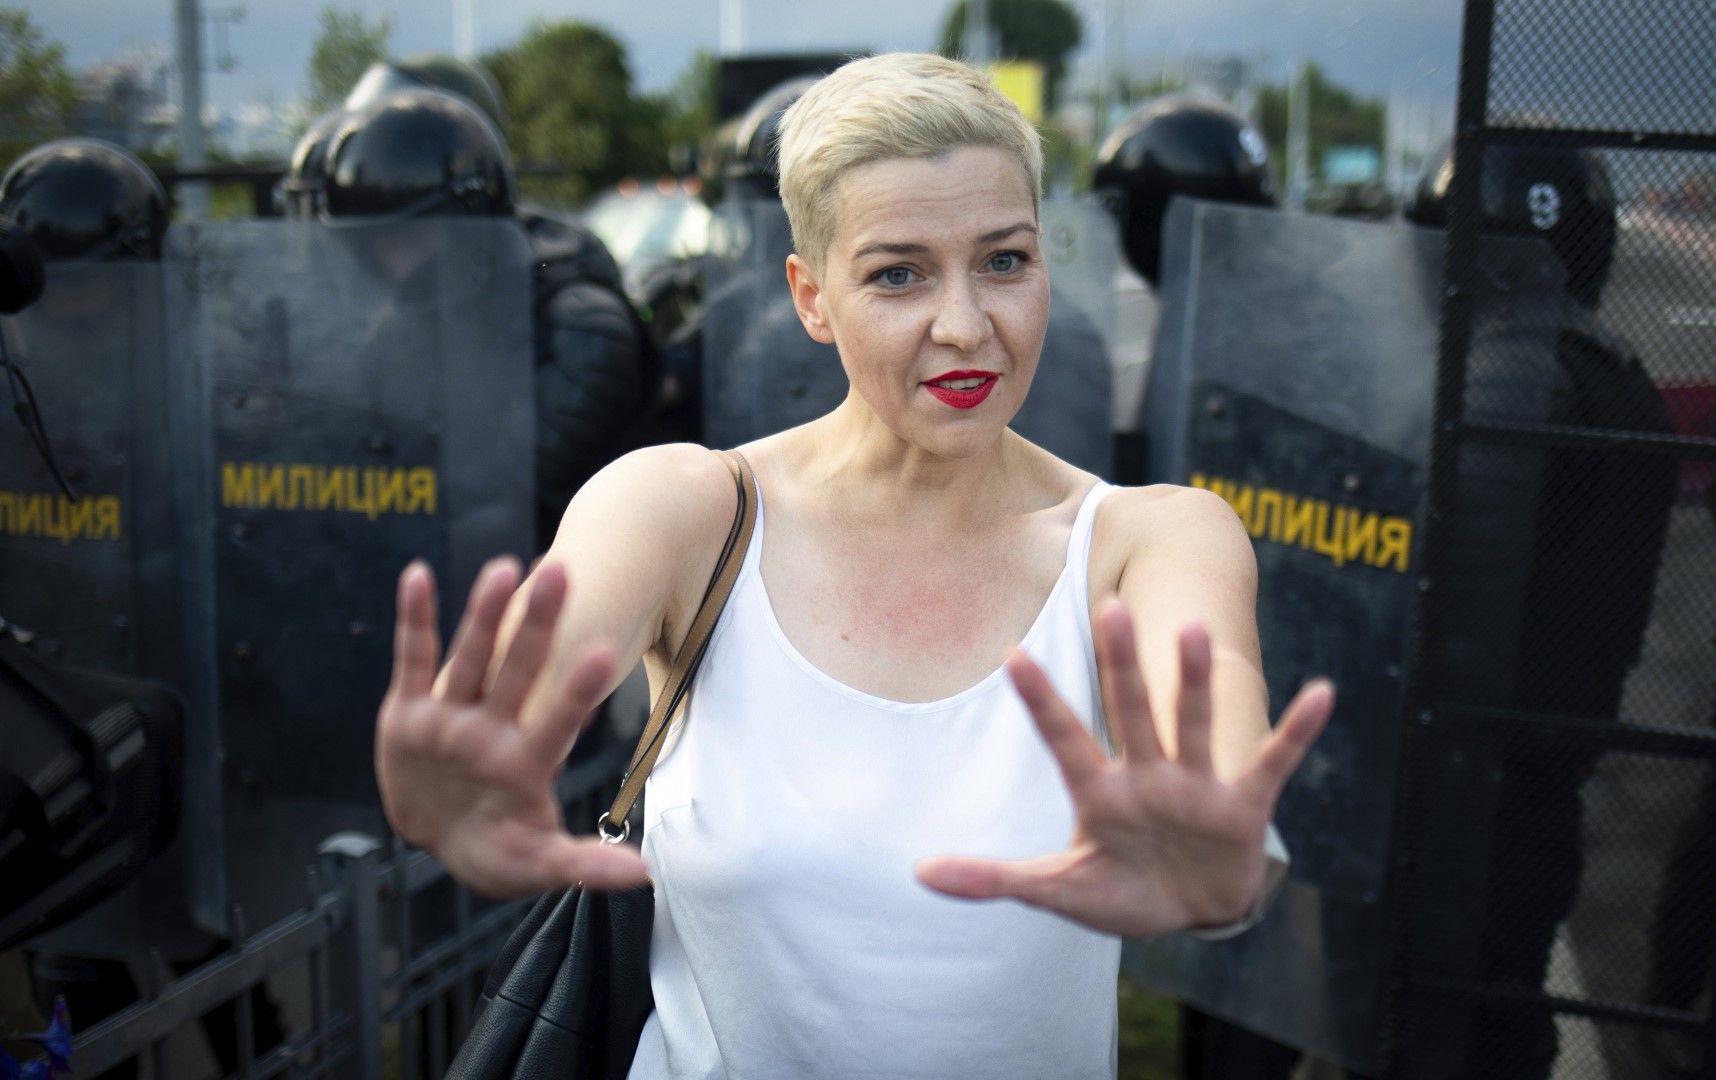 Мария Колесникова по време на протест на 30 август. Тя стана една от най-изявените фигури в протестното движение срещу президента Александър Лукашенко